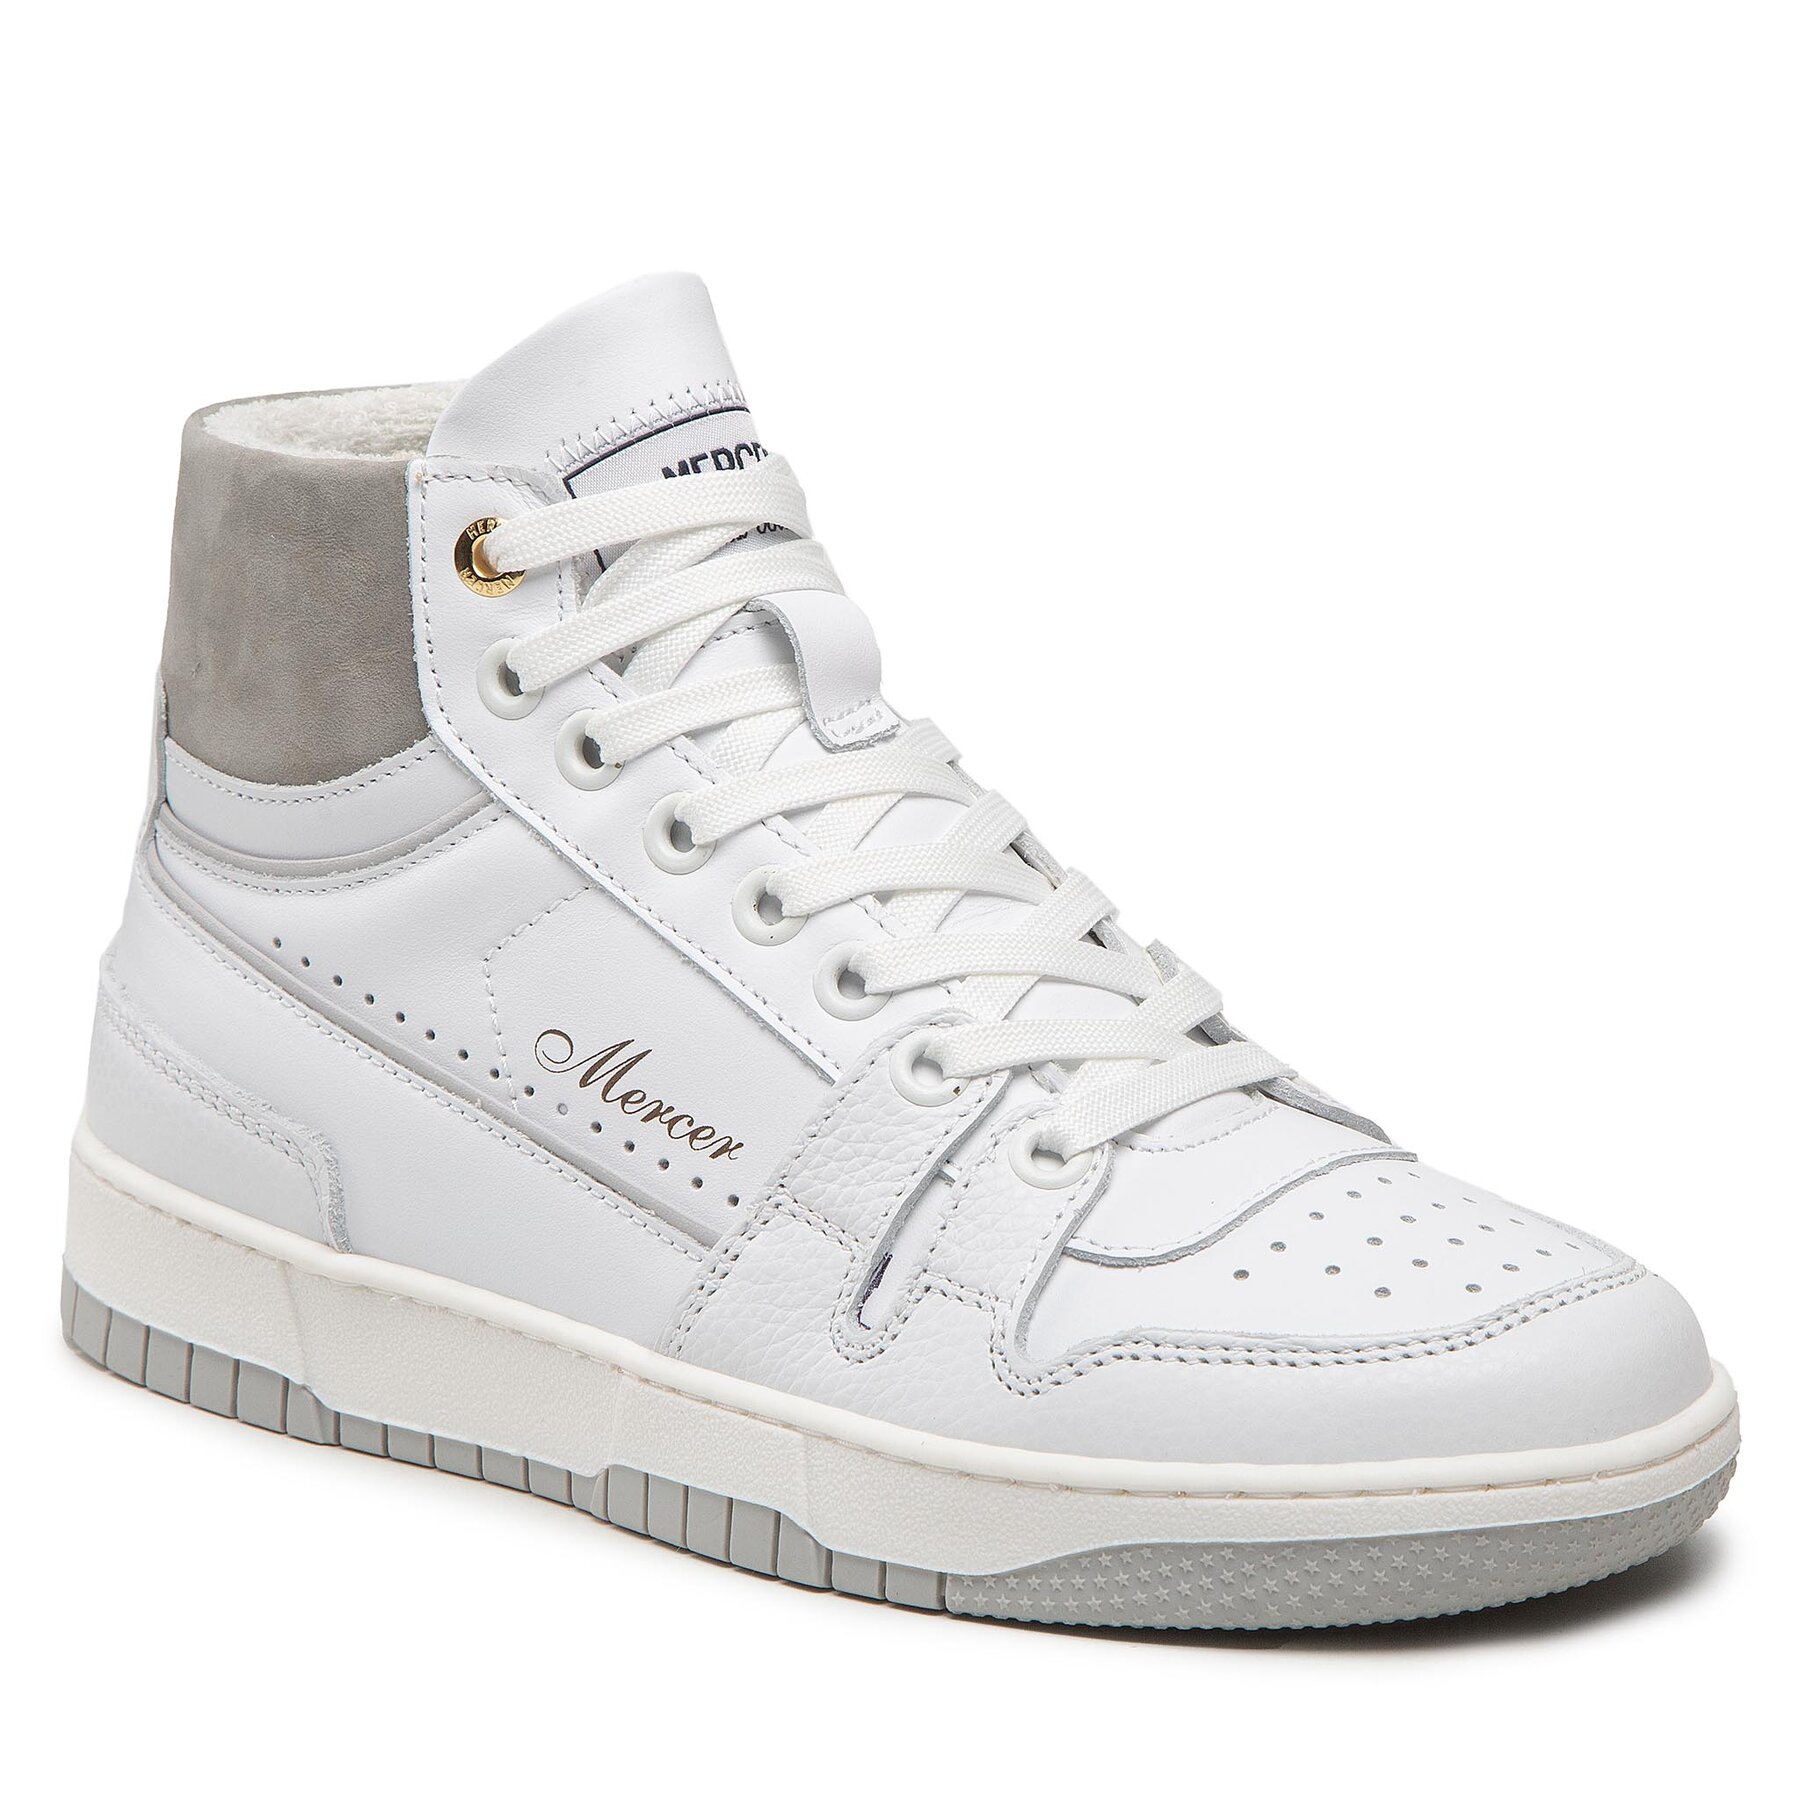 Sneakers Mercer Amsterdam The Brooklyn High Me223003 White/Grey 158